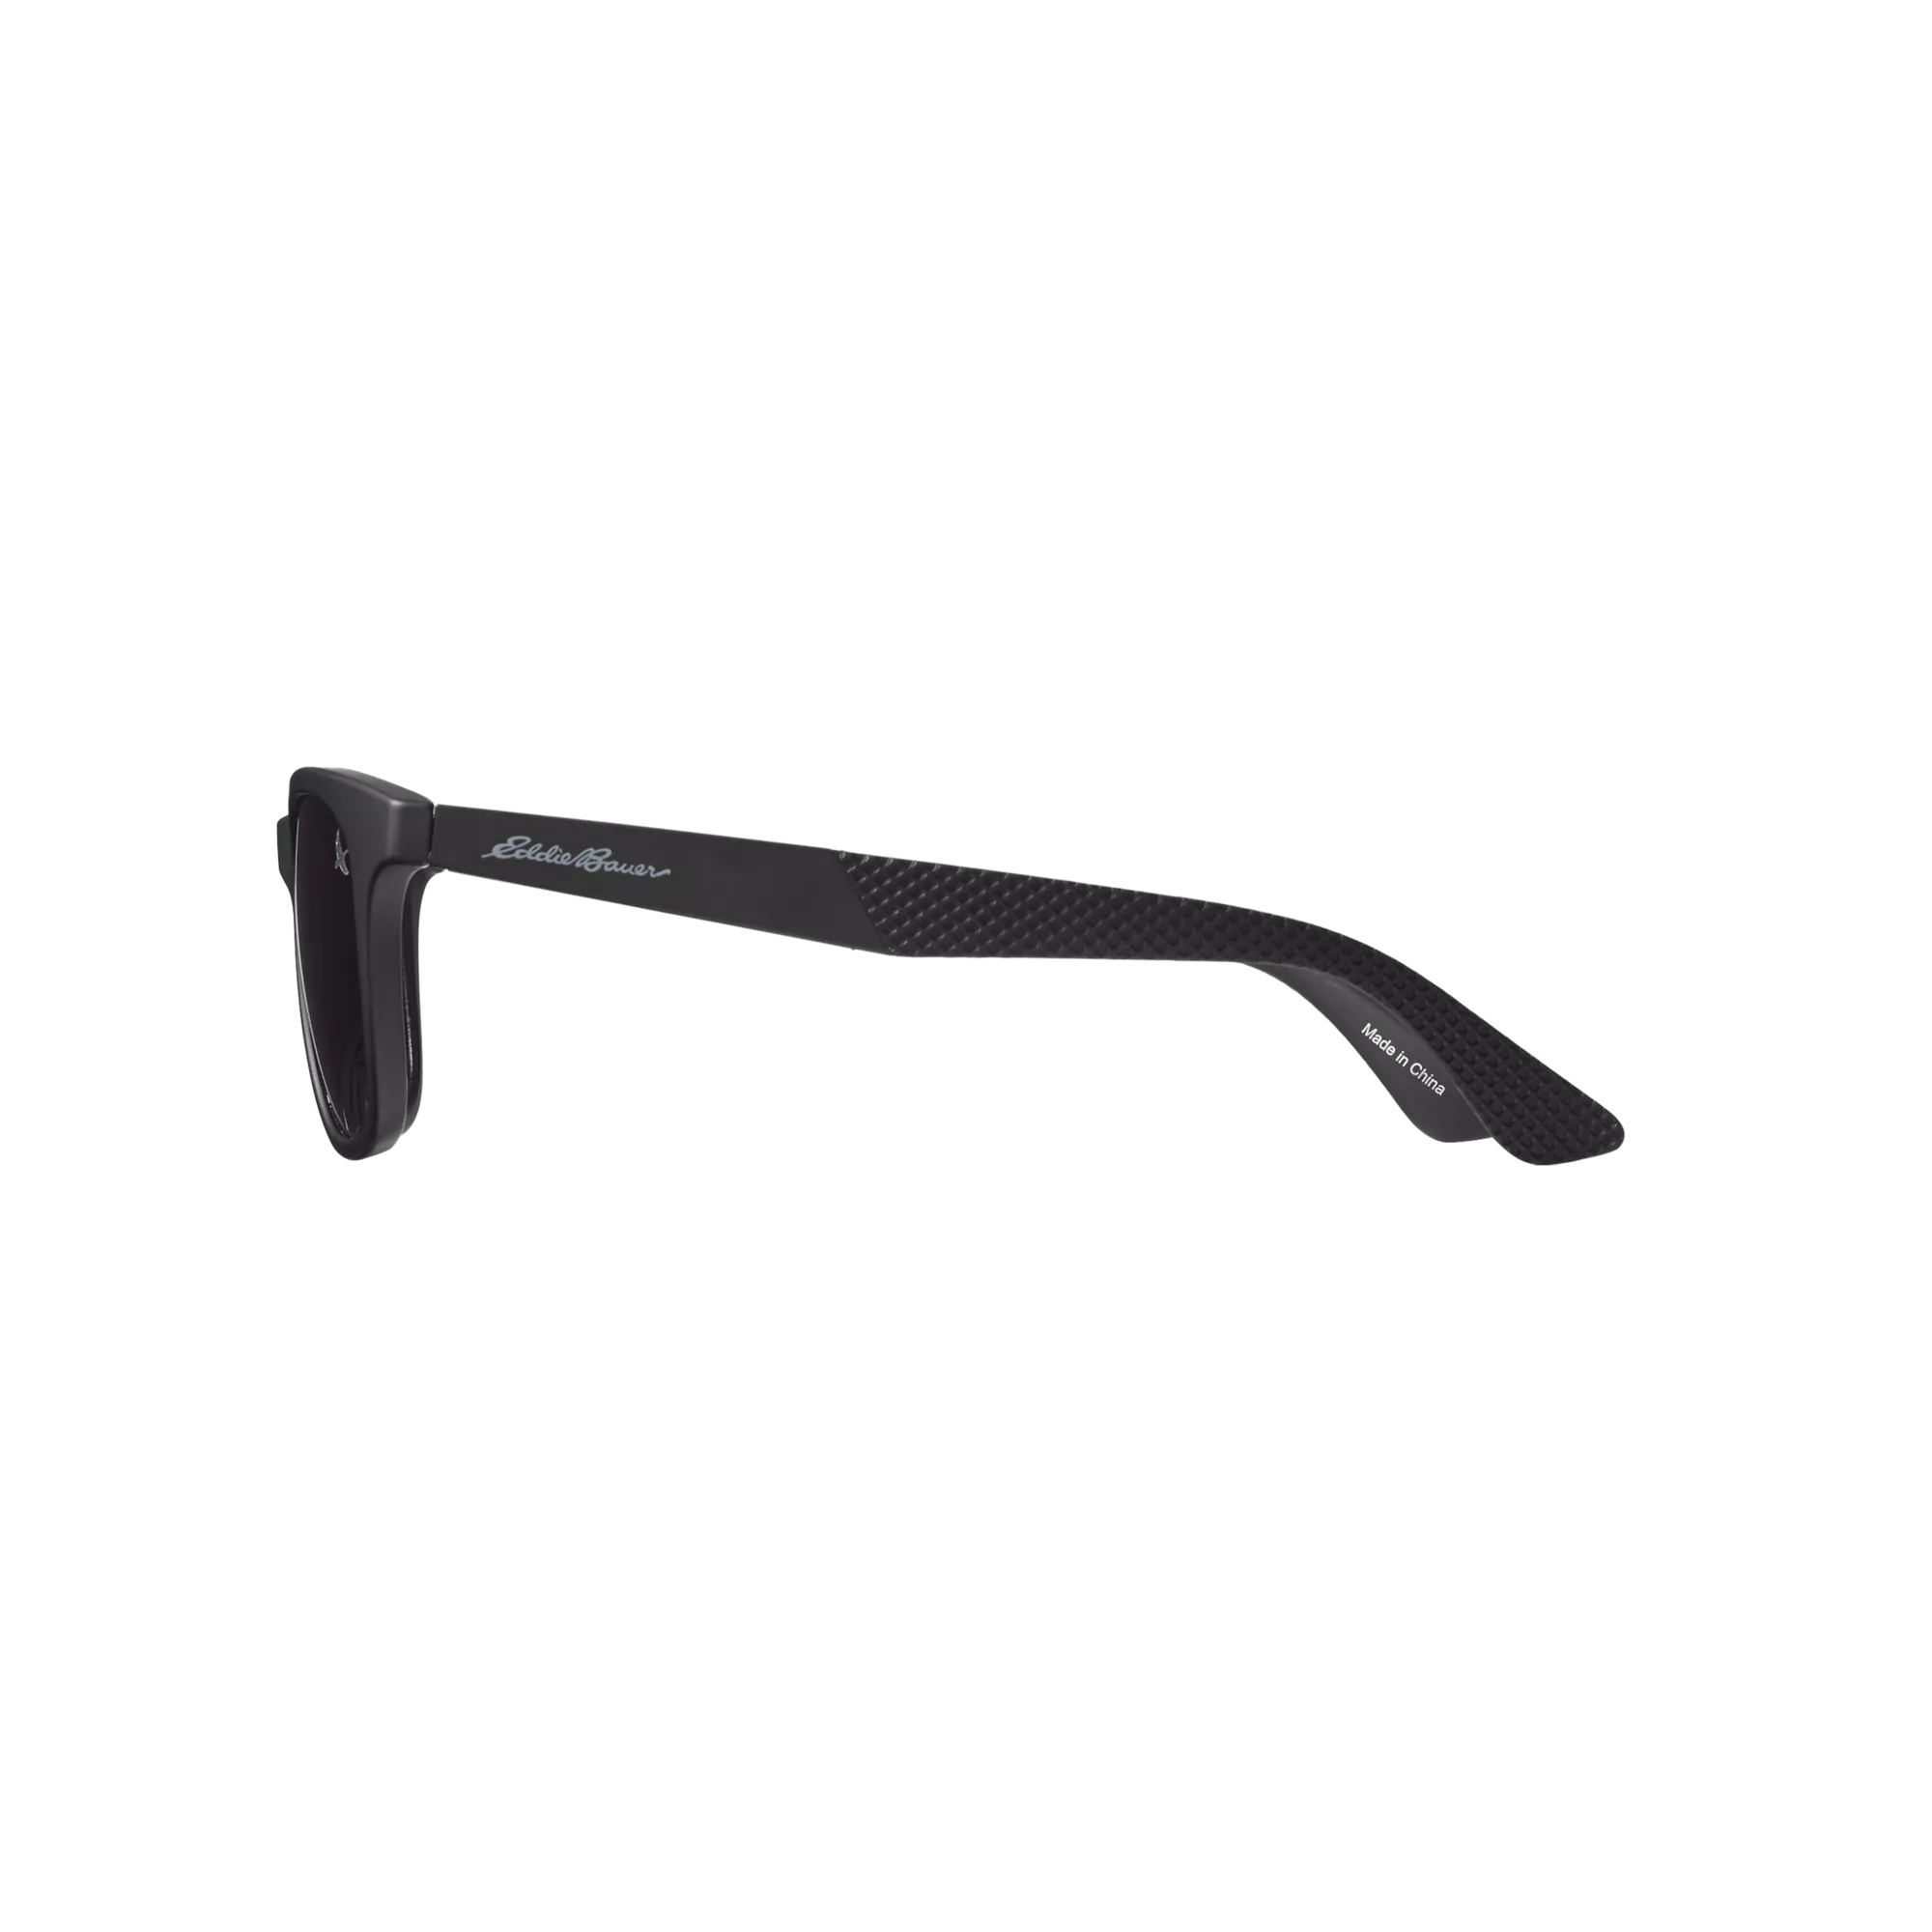 Preston Polarized Sunglasses - Small Fit